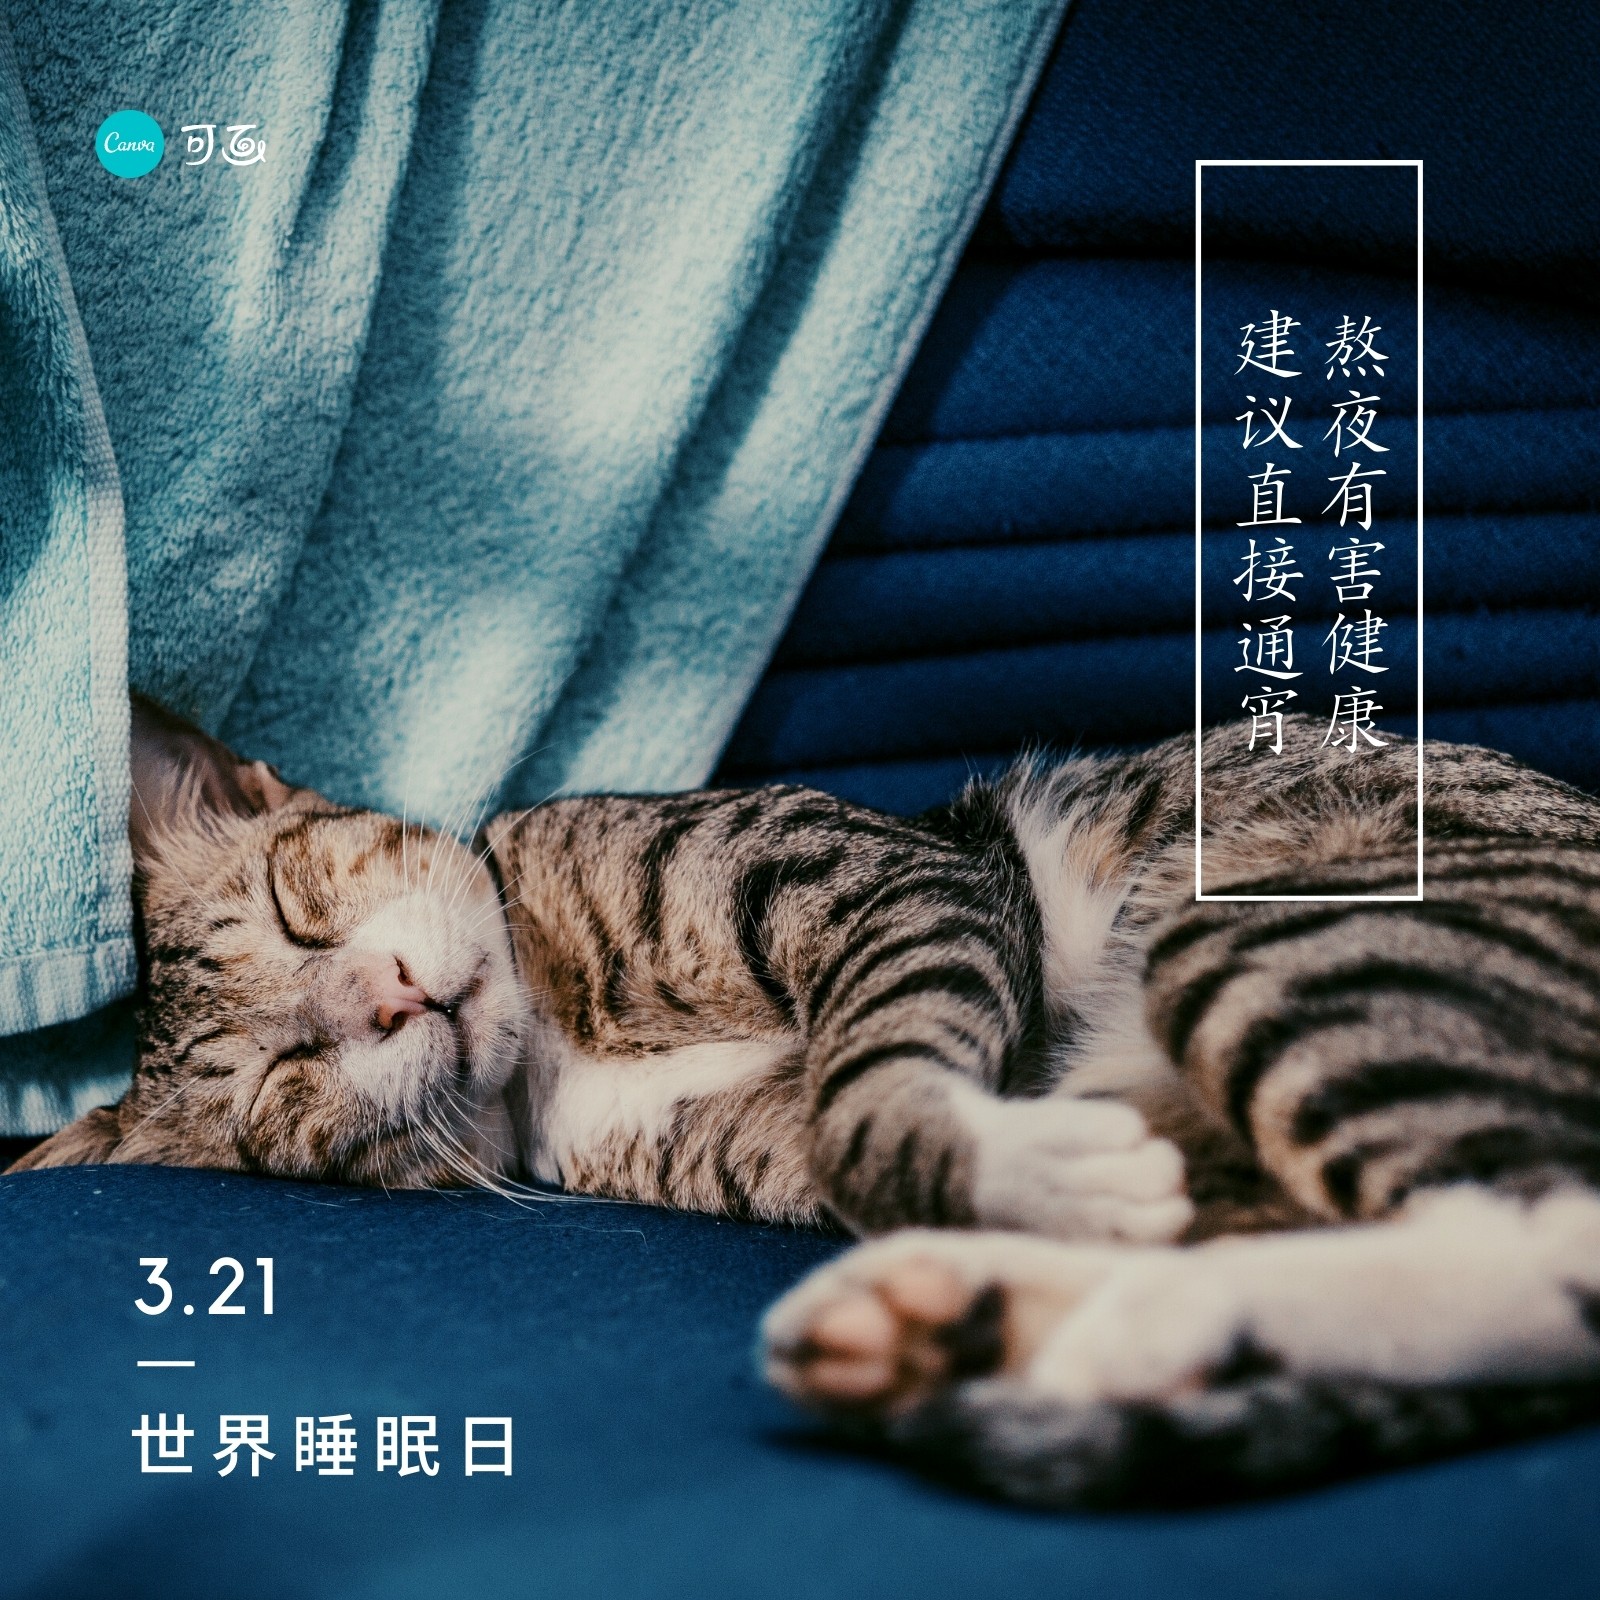 蓝色睡觉小猫照片世界睡眠日分享微信朋友圈 模板 Canva可画